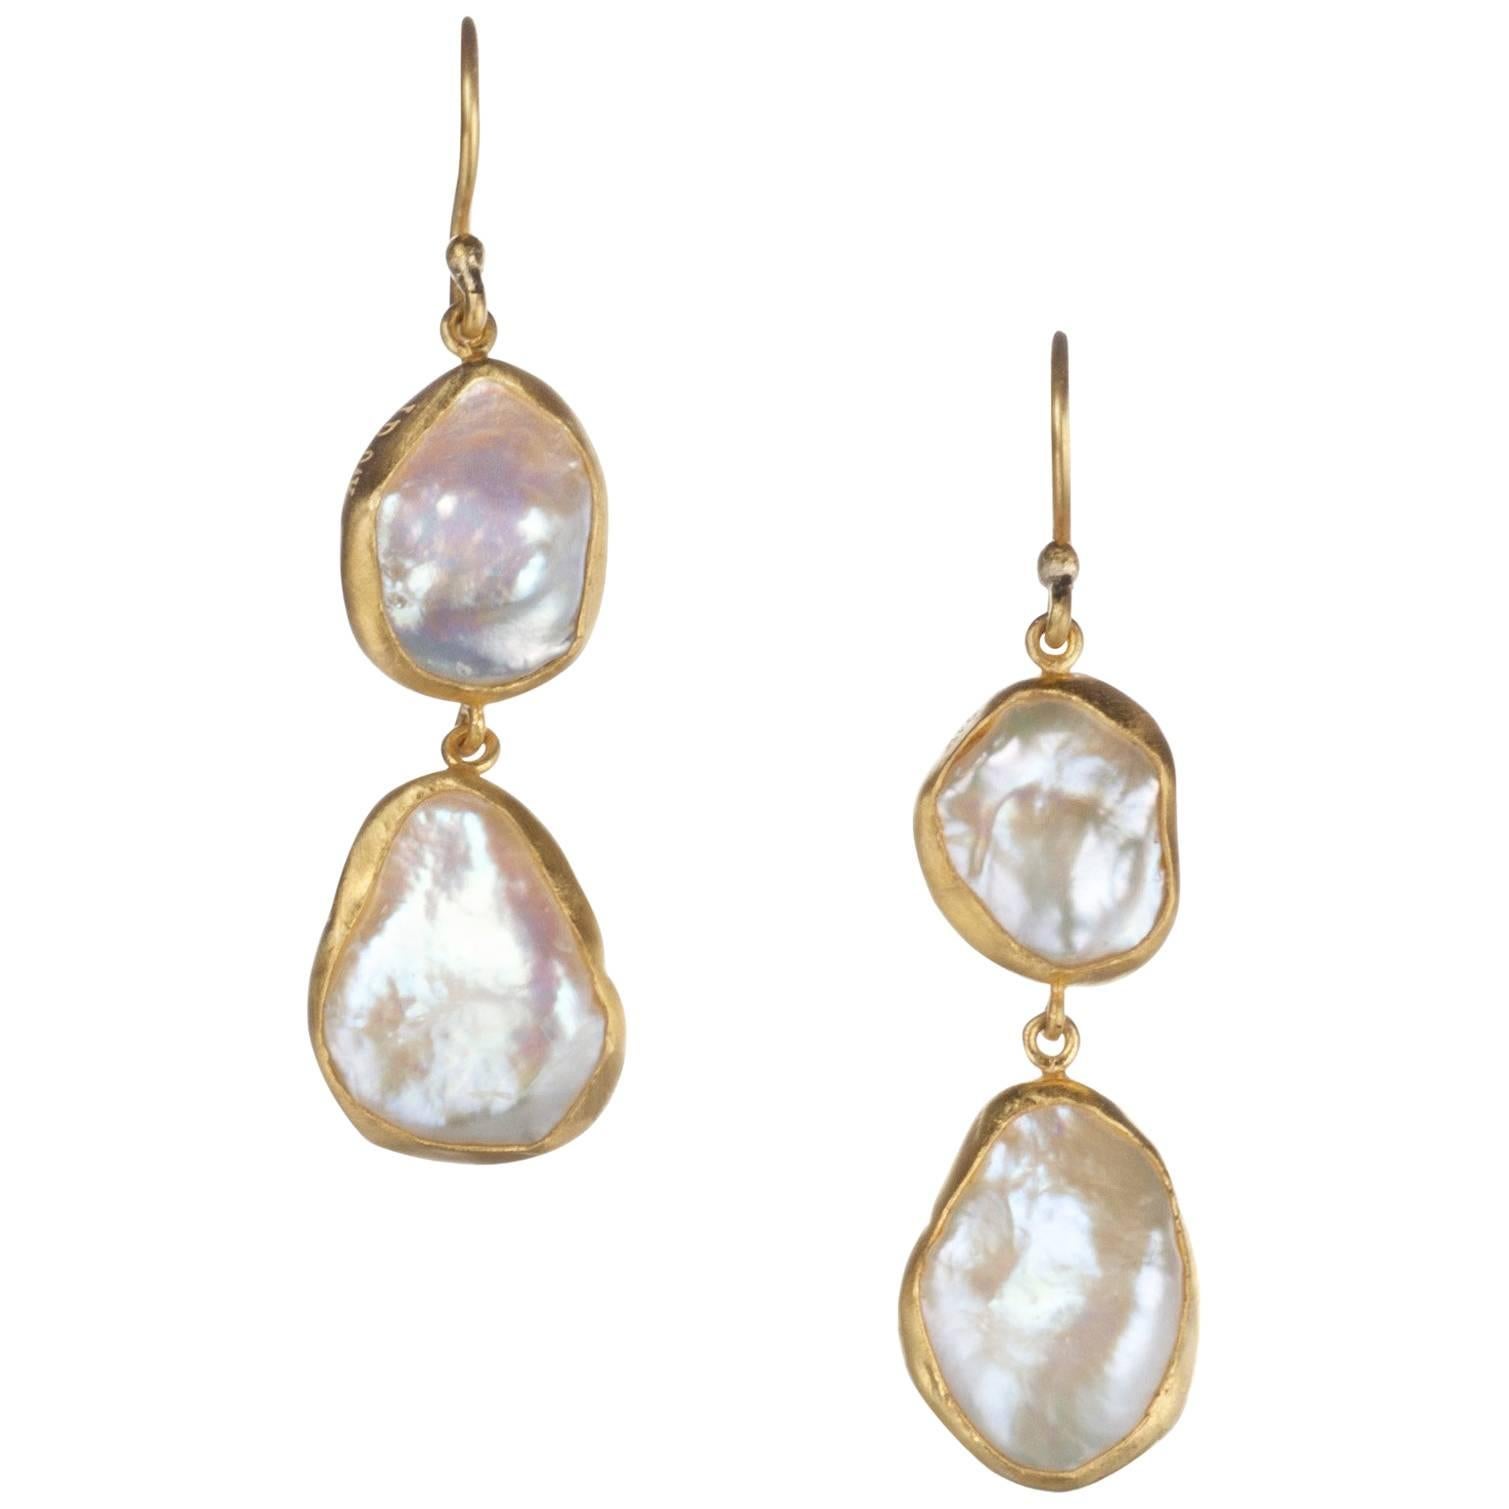 Lika Behar “Karin” Double Drop Pearl Earrings in 24 Karat Yellow Gold For Sale